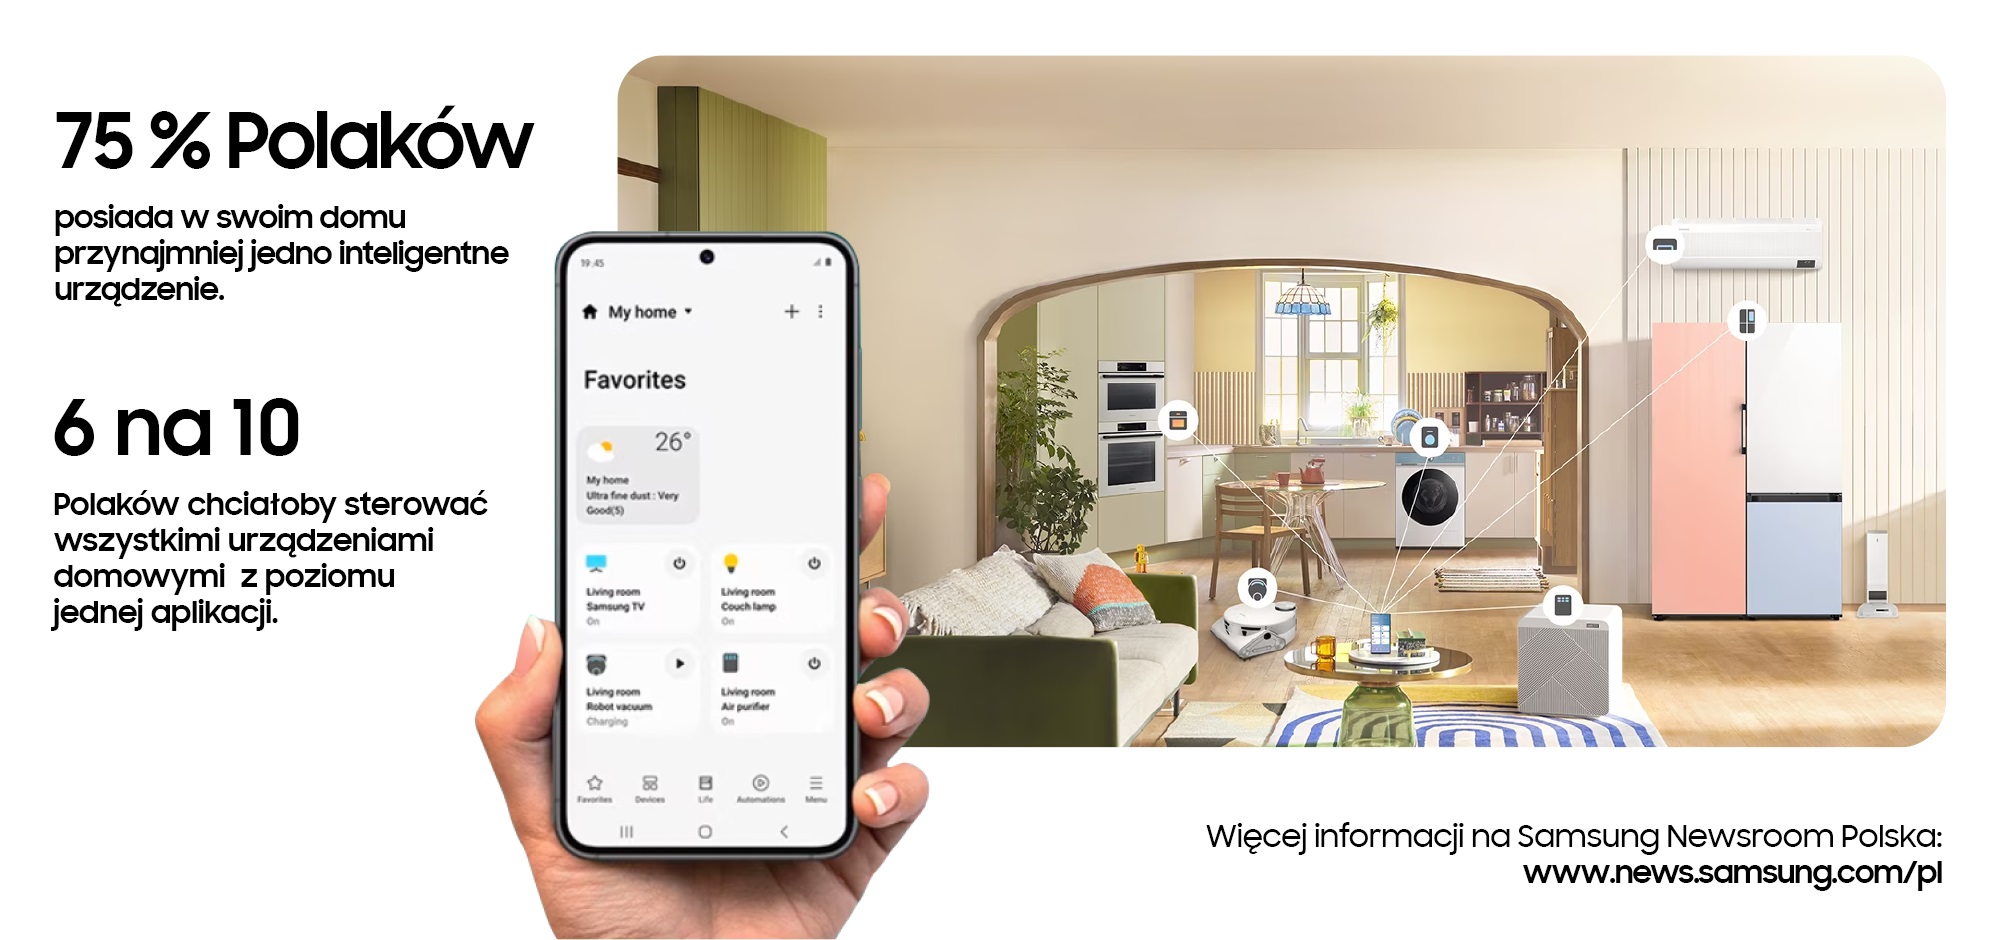 Smart Home według Polaków (źródło: Samsung)